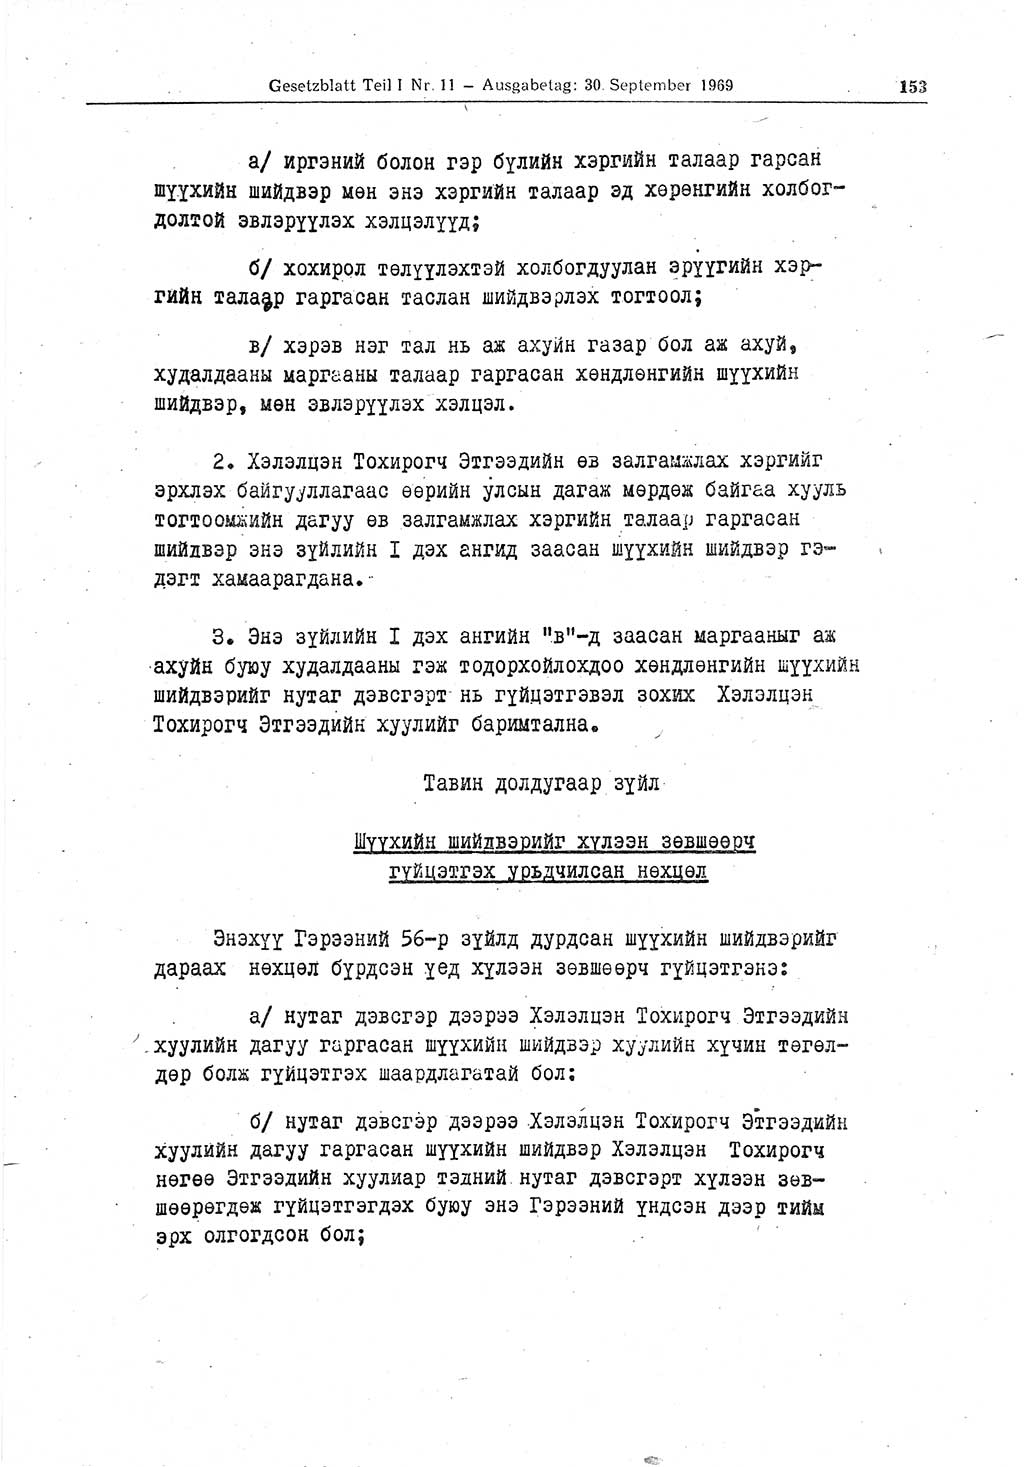 Gesetzblatt (GBl.) der Deutschen Demokratischen Republik (DDR) Teil Ⅰ 1969, Seite 153 (GBl. DDR Ⅰ 1969, S. 153)